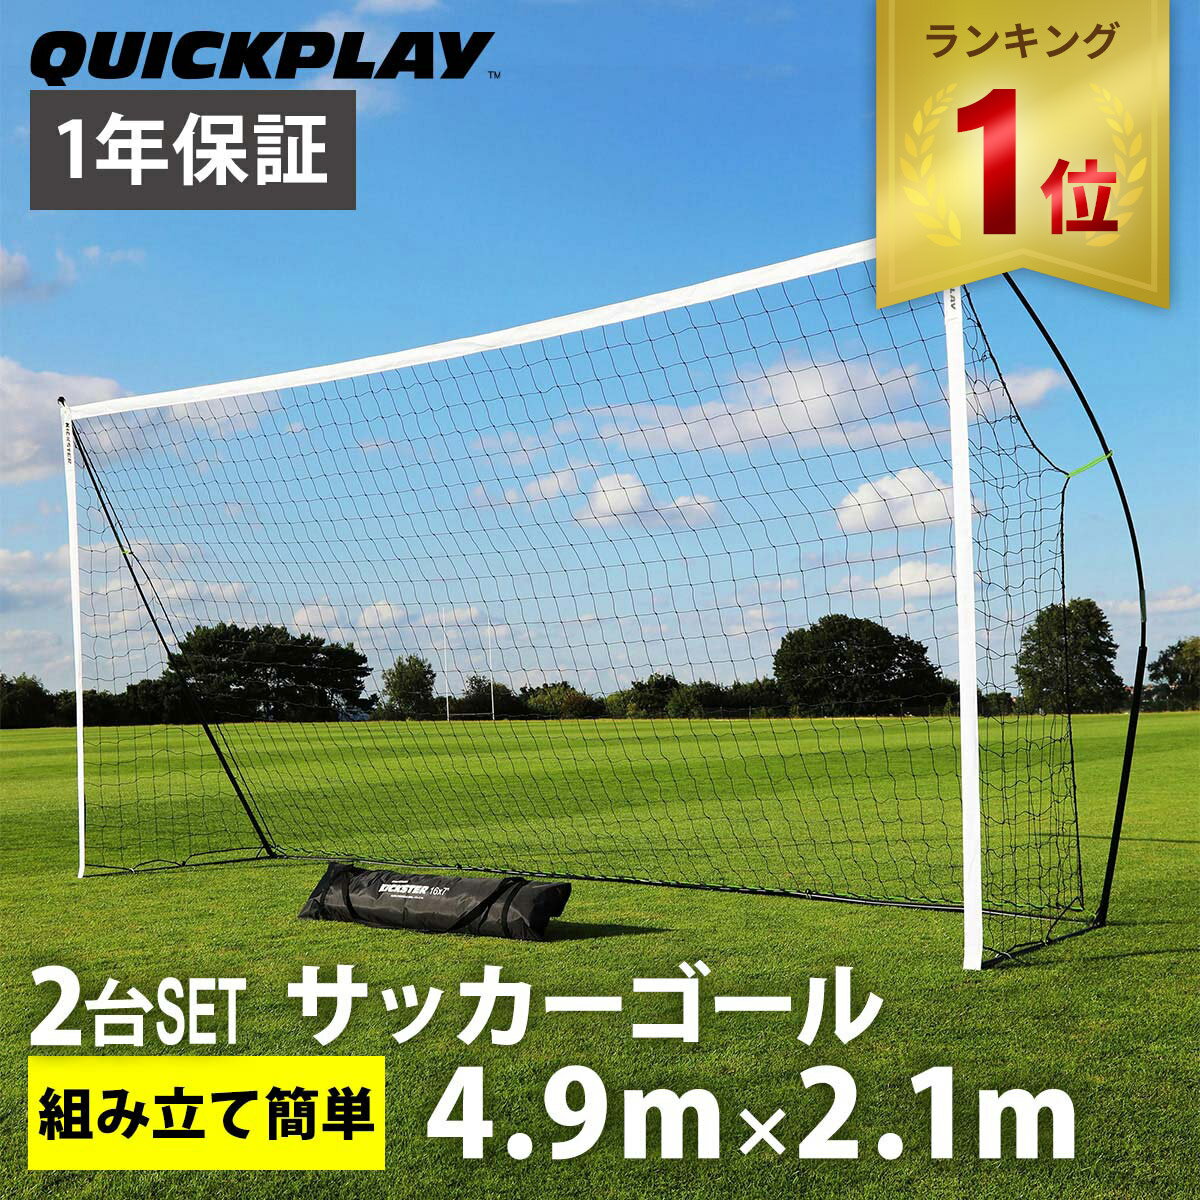 【楽天1位】 クイックプレイ QUICKPLAY キックスター ポータブル サッカーゴール 少年サッカー8人制サイズ 4.9m 2.1m 16 7ft 2台セット 組立式 練習器具